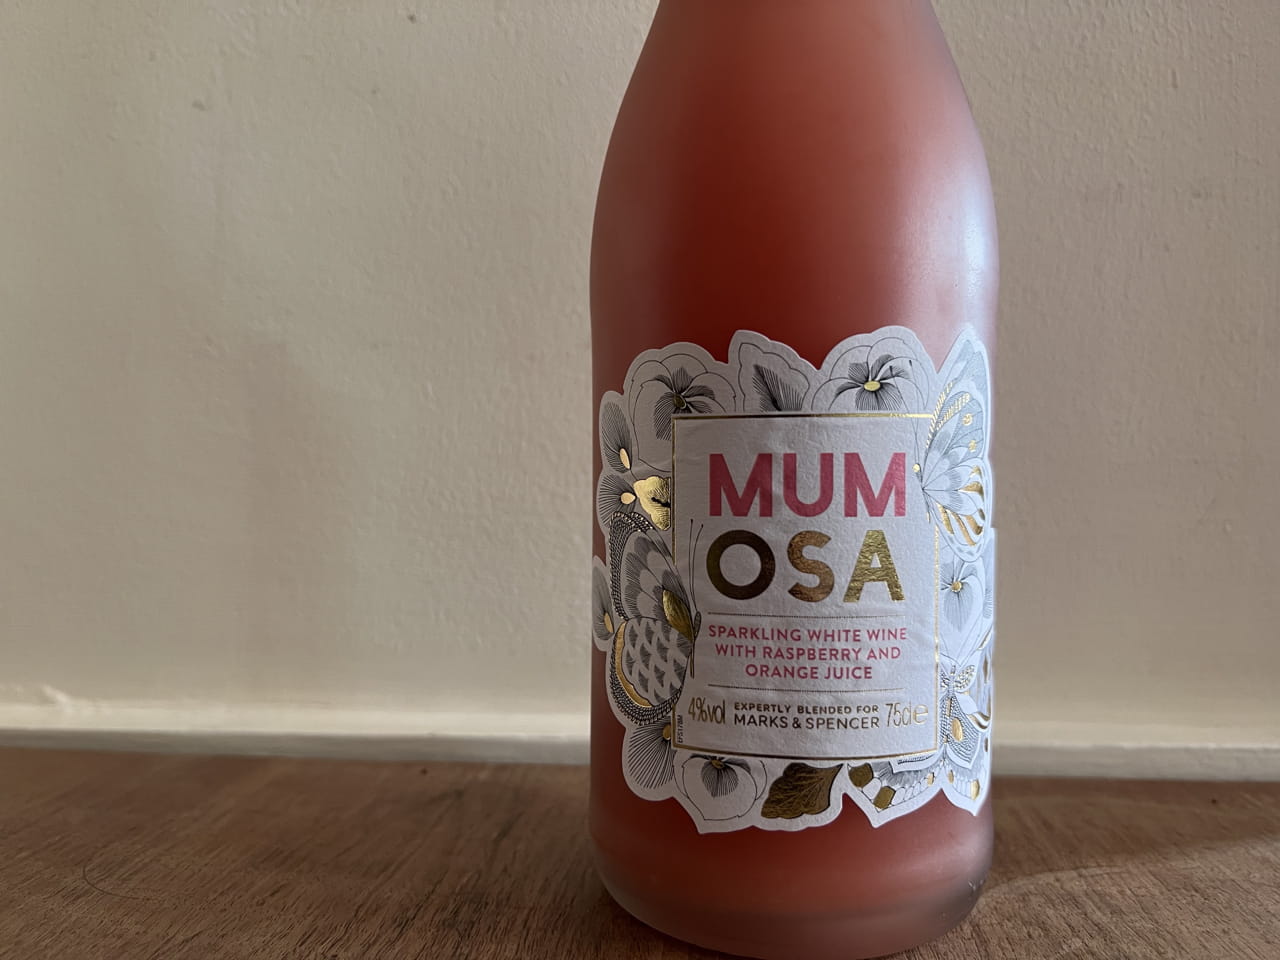  Drink of the week: Mumosa